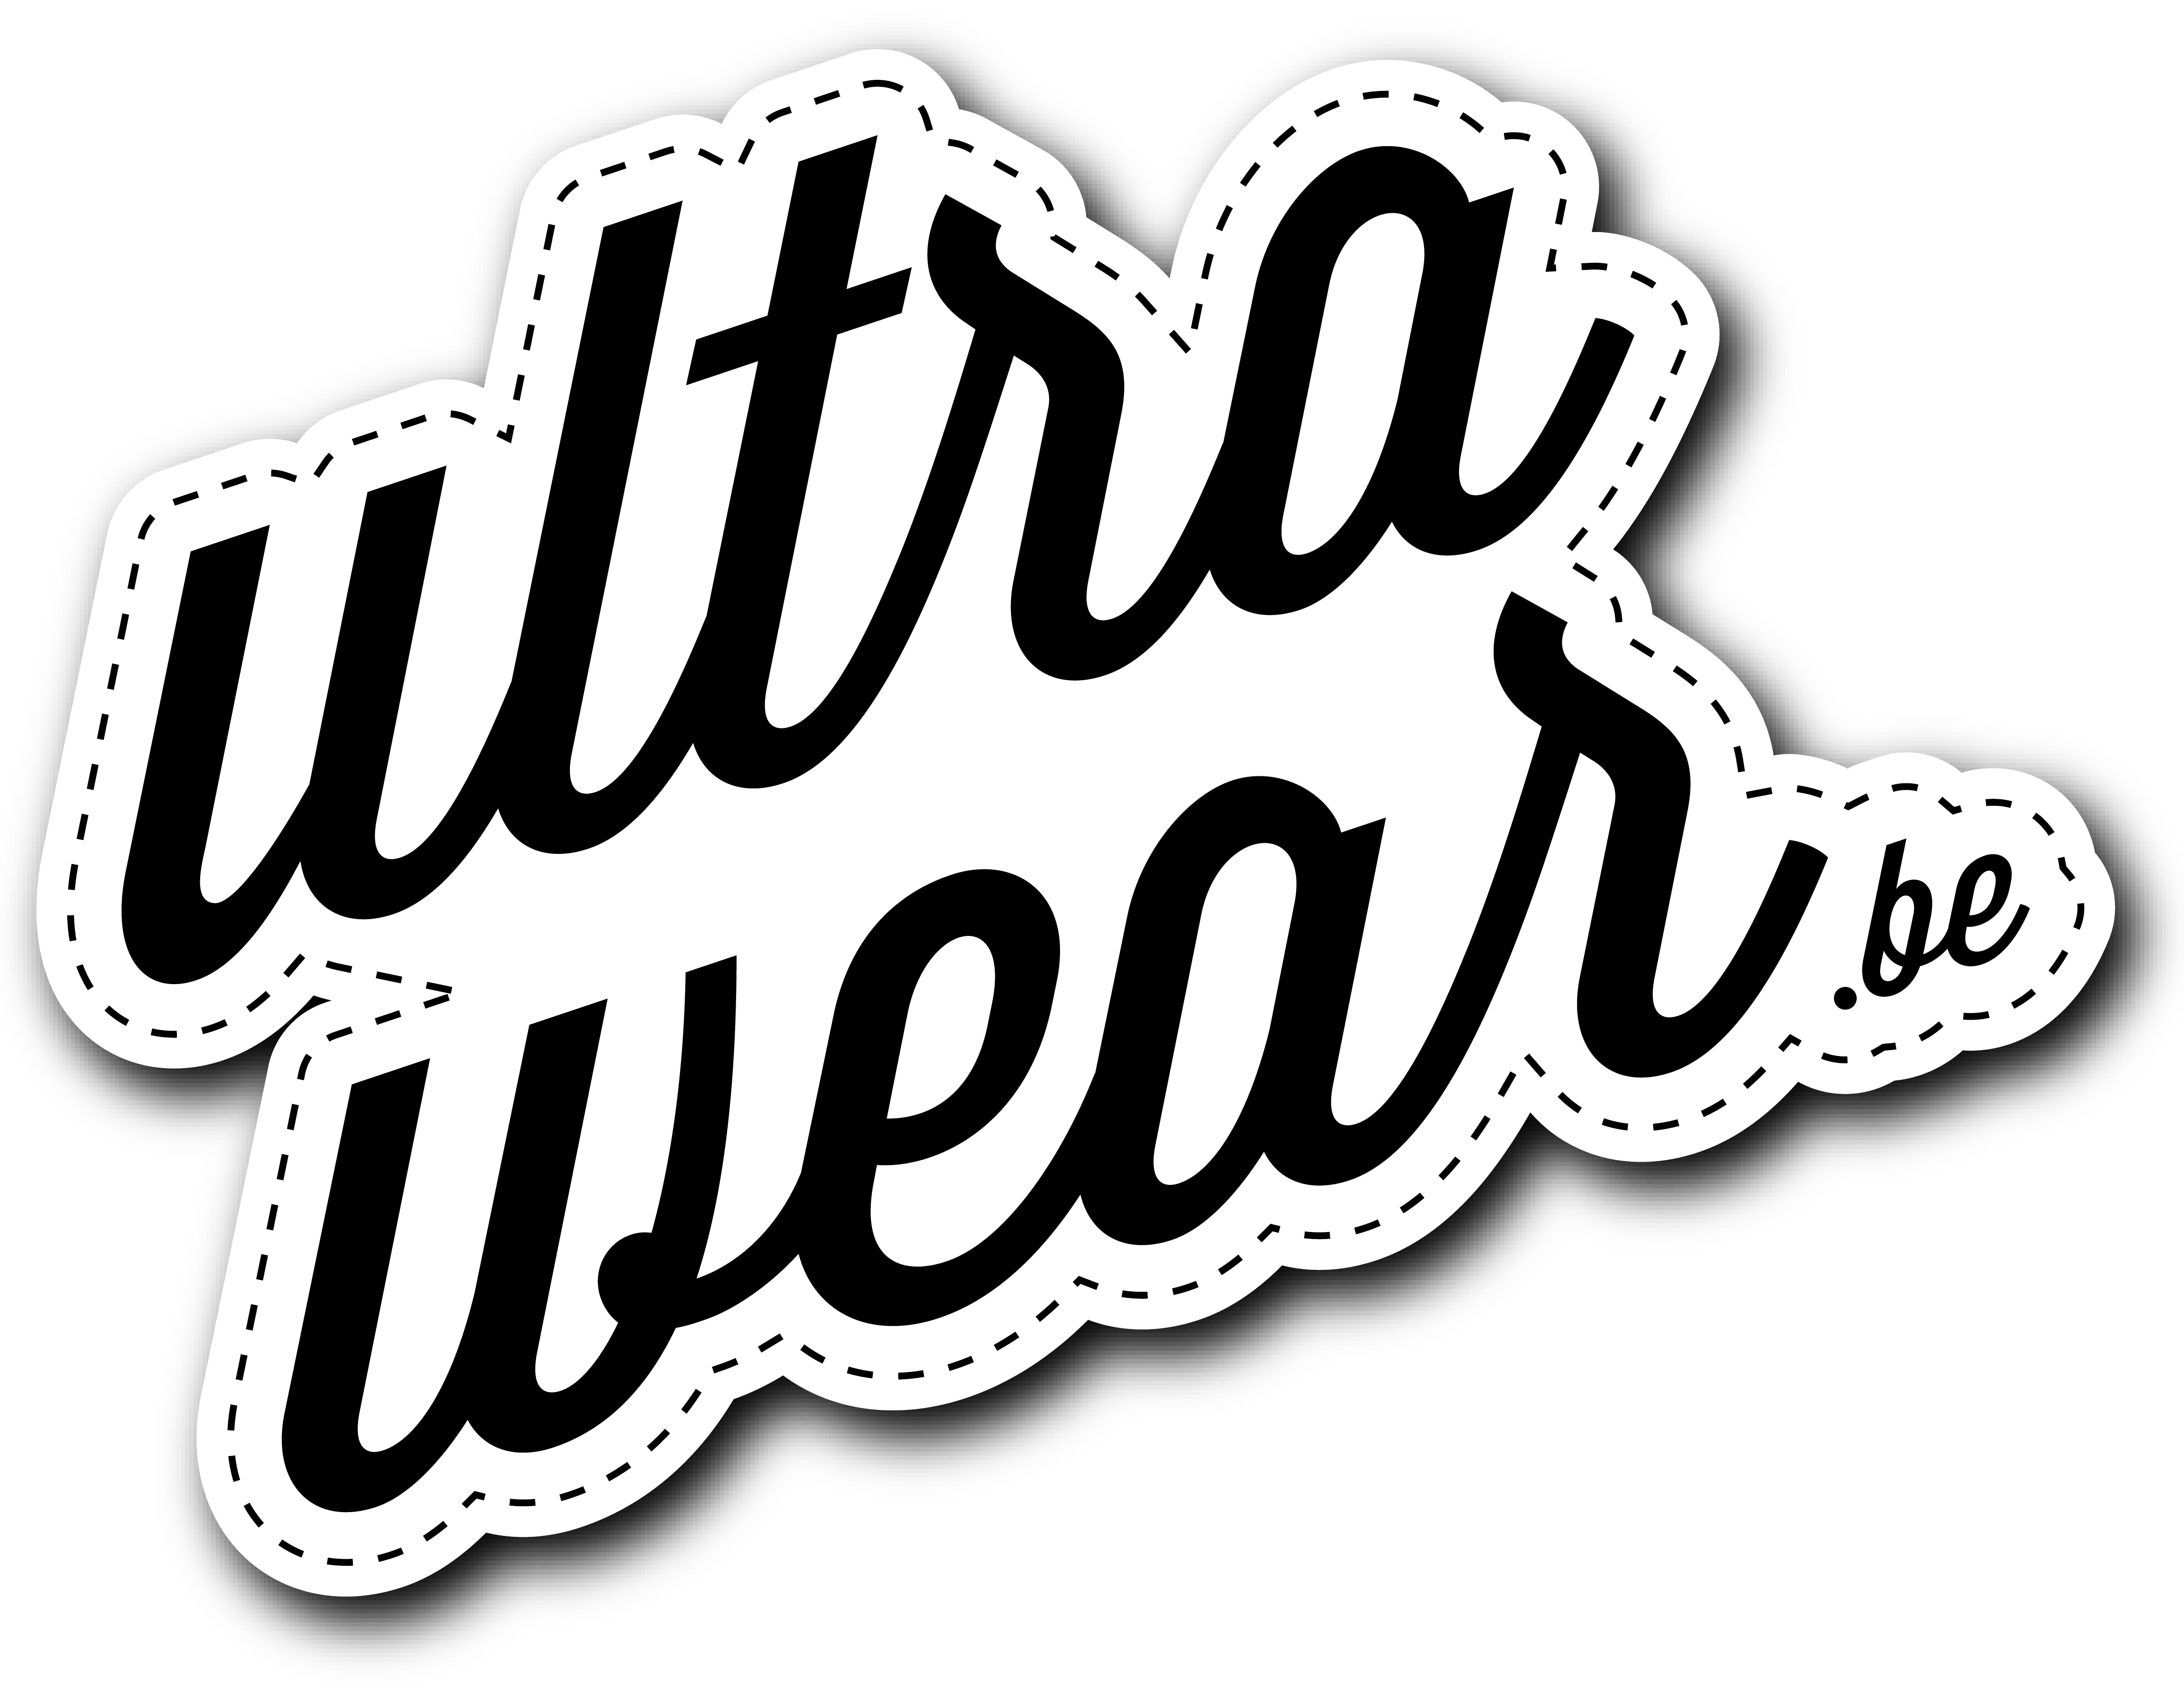 Ultrawear